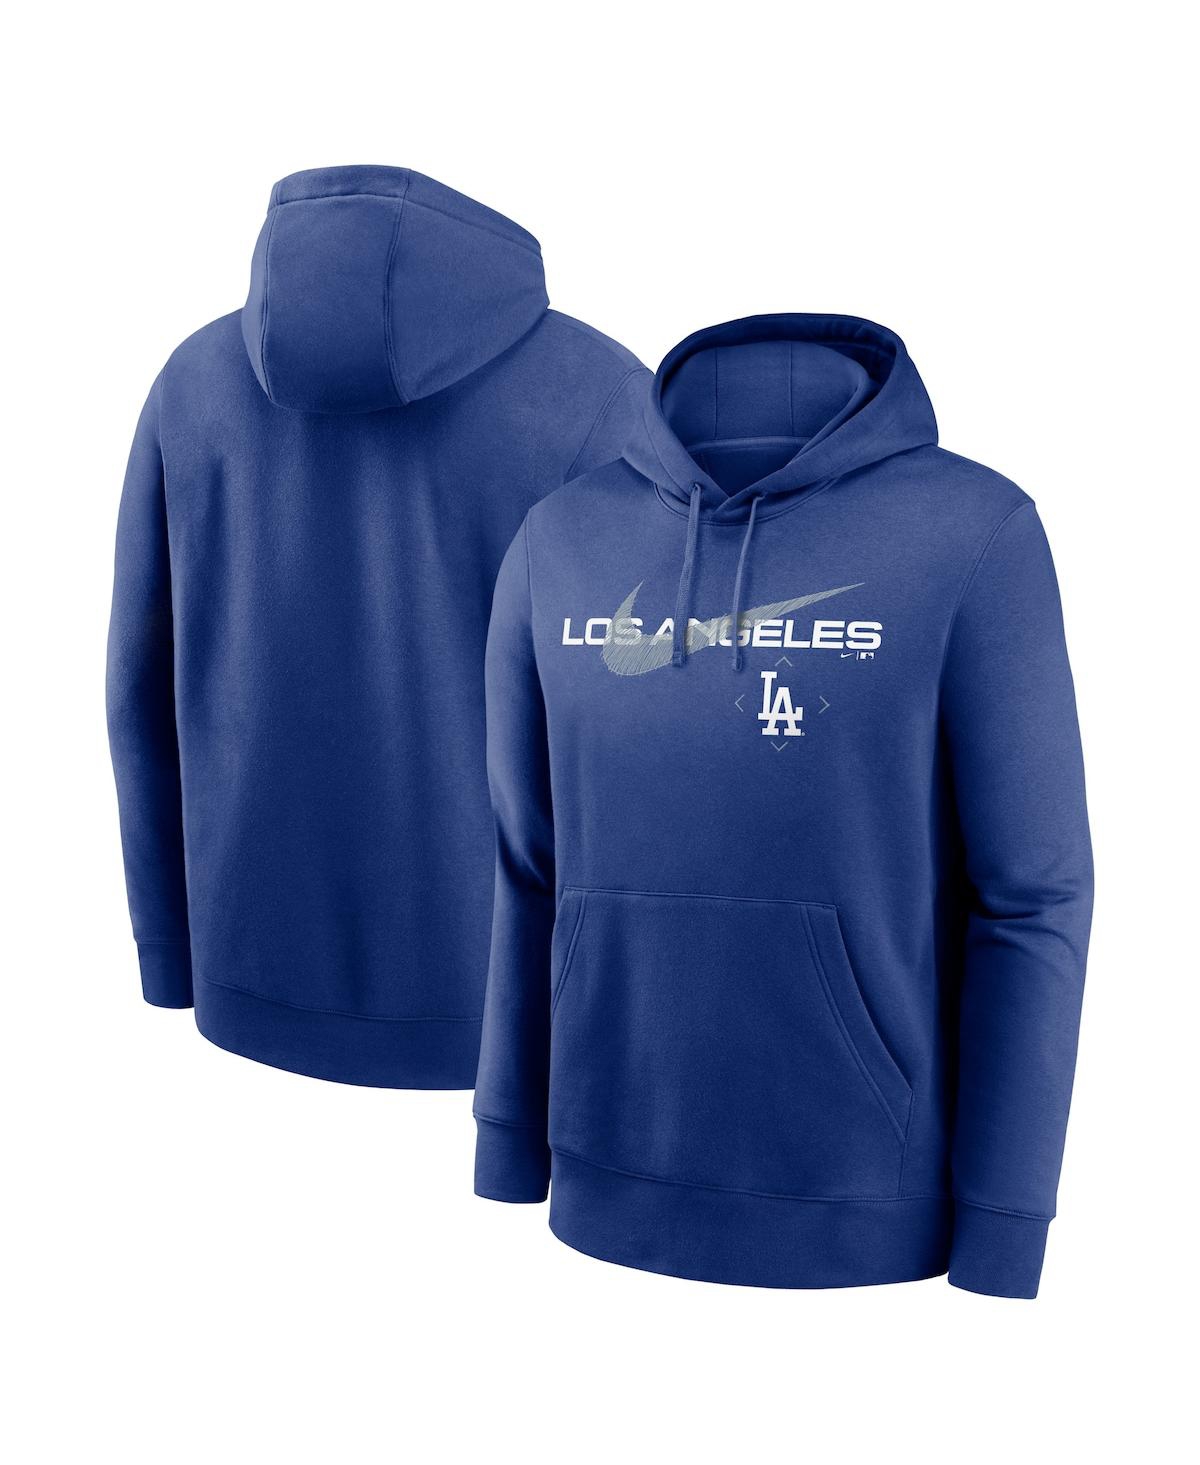 Nike Men's Los Angeles Dodgers City Connect 2 Hit T-Shirt